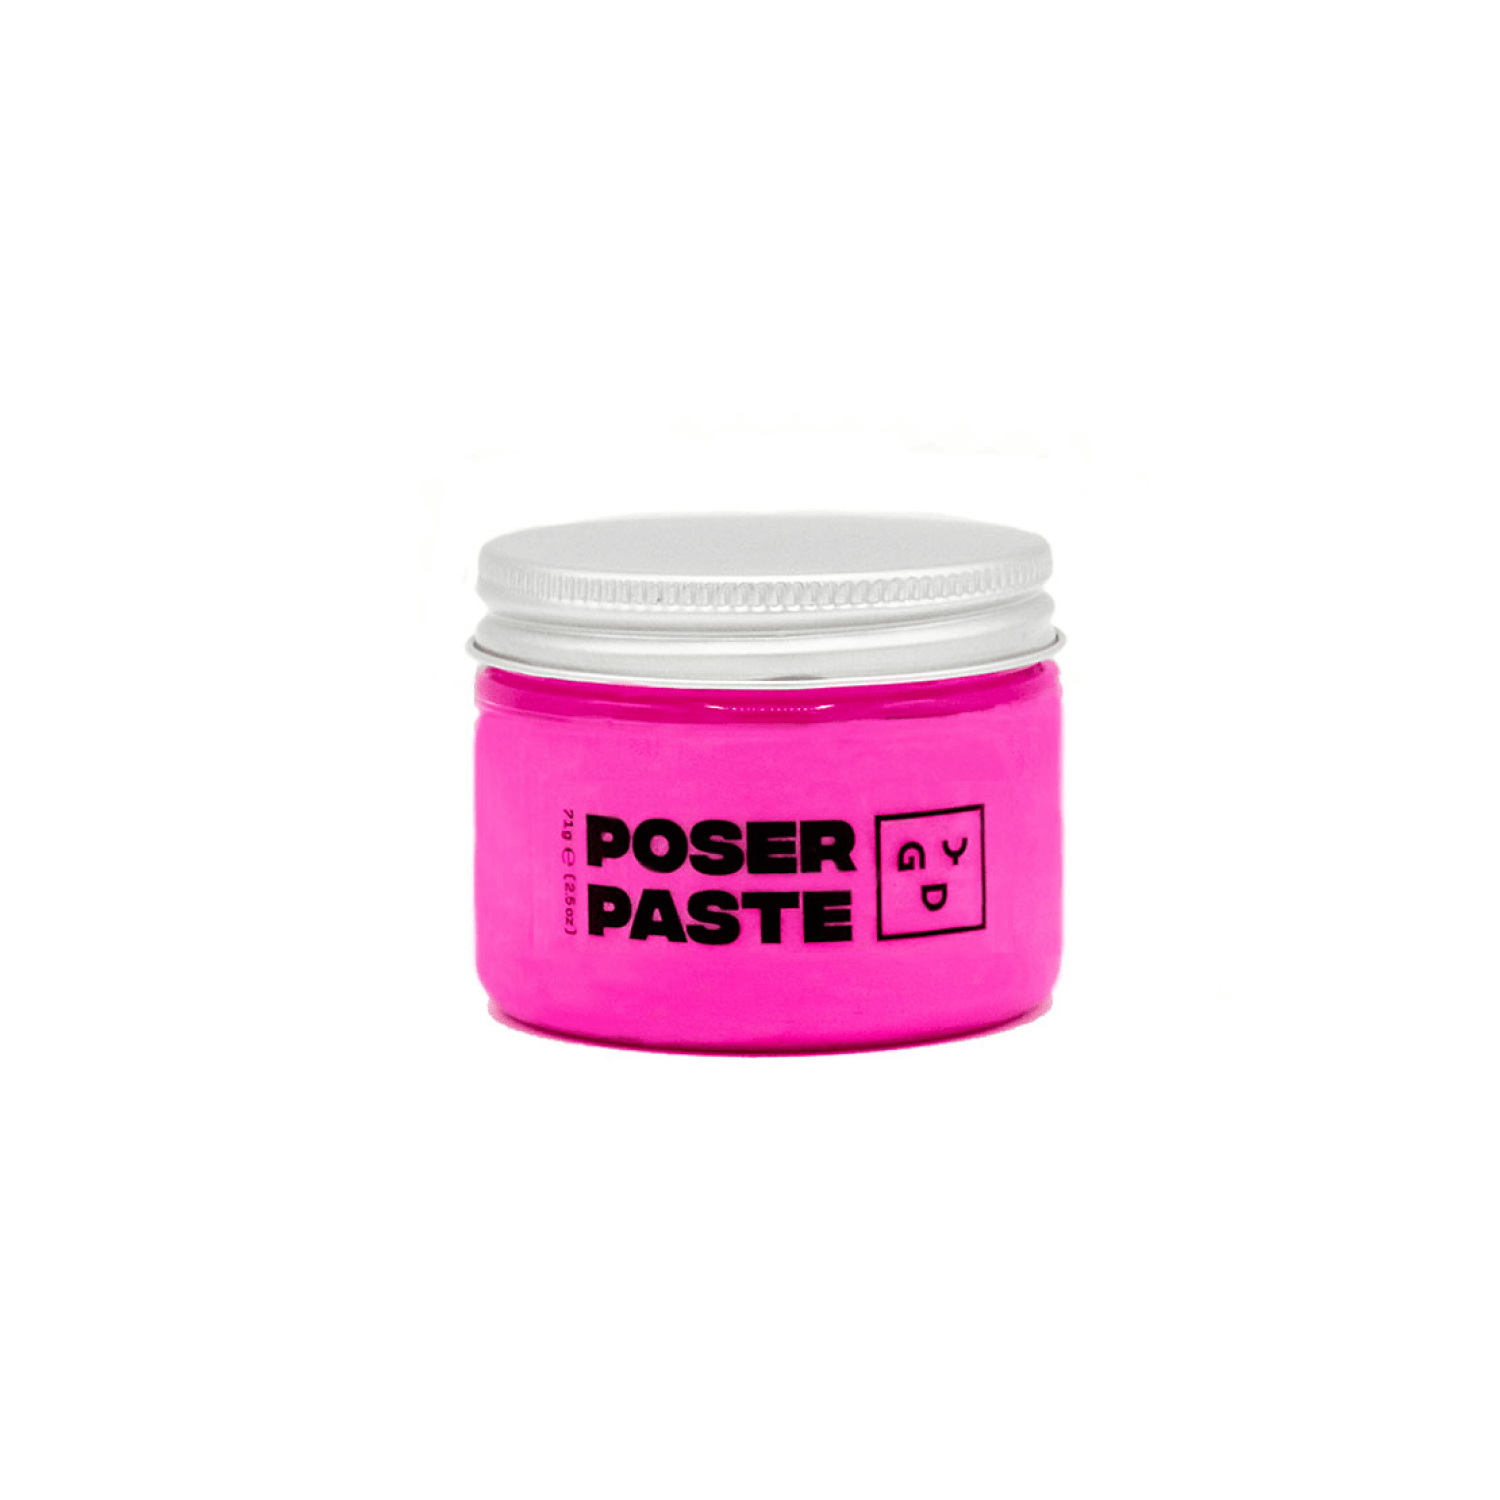 poser paste hair makeup